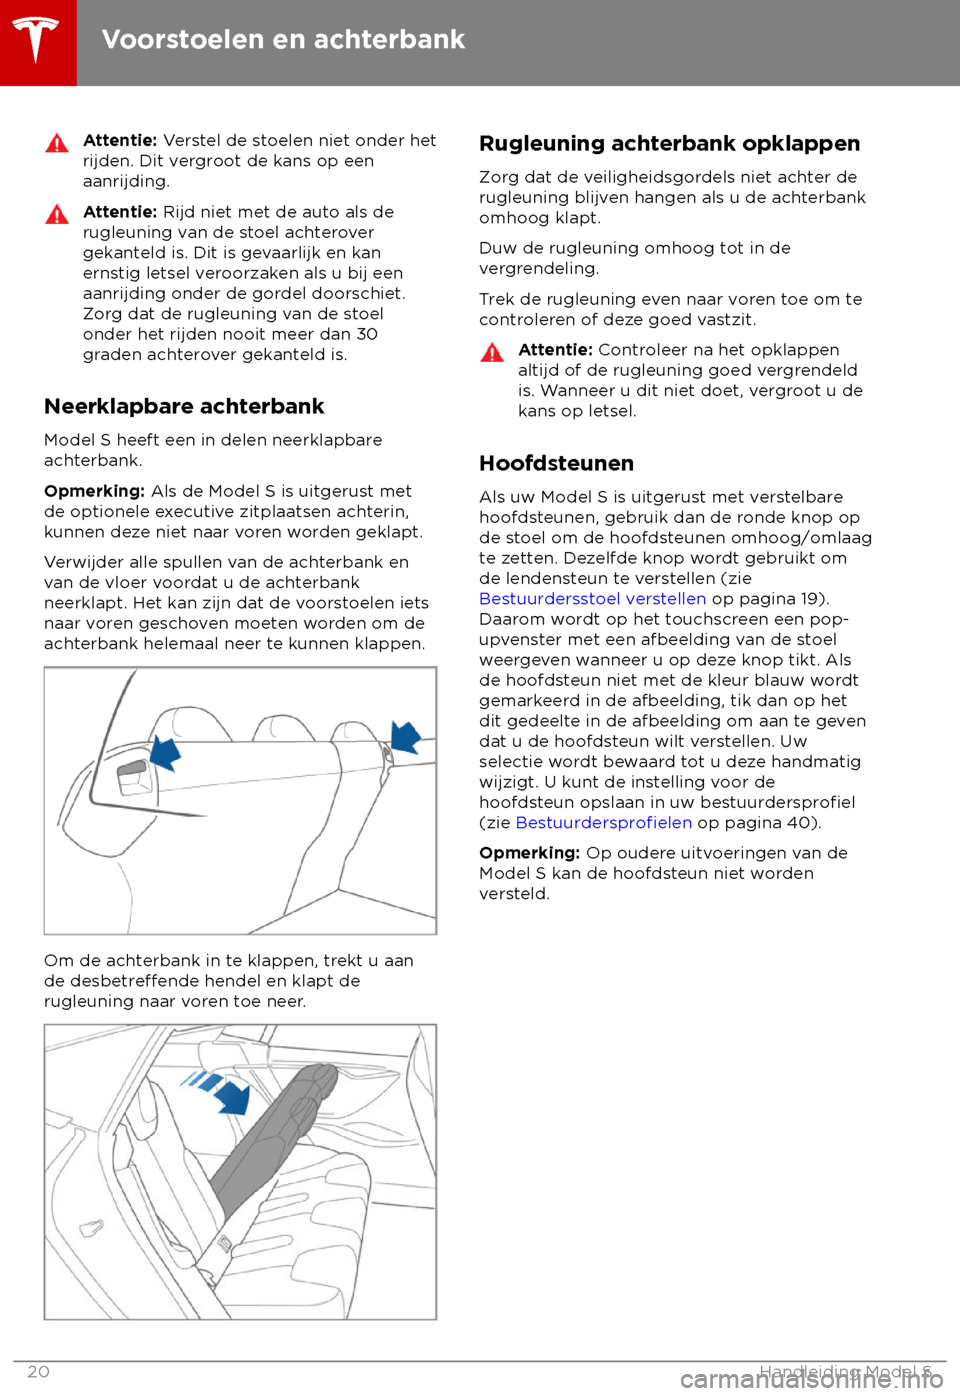 TESLA MODEL S 2018  Handleiding (in Dutch) Attentie: V
erstel de stoelen niet onder het
rijden. Dit vergroot de kans op een
aanrijding. Attentie: Rijd niet met de aut

o als de
rugleuning van de stoel achterover
gekanteld is. Dit is gevaarlijk